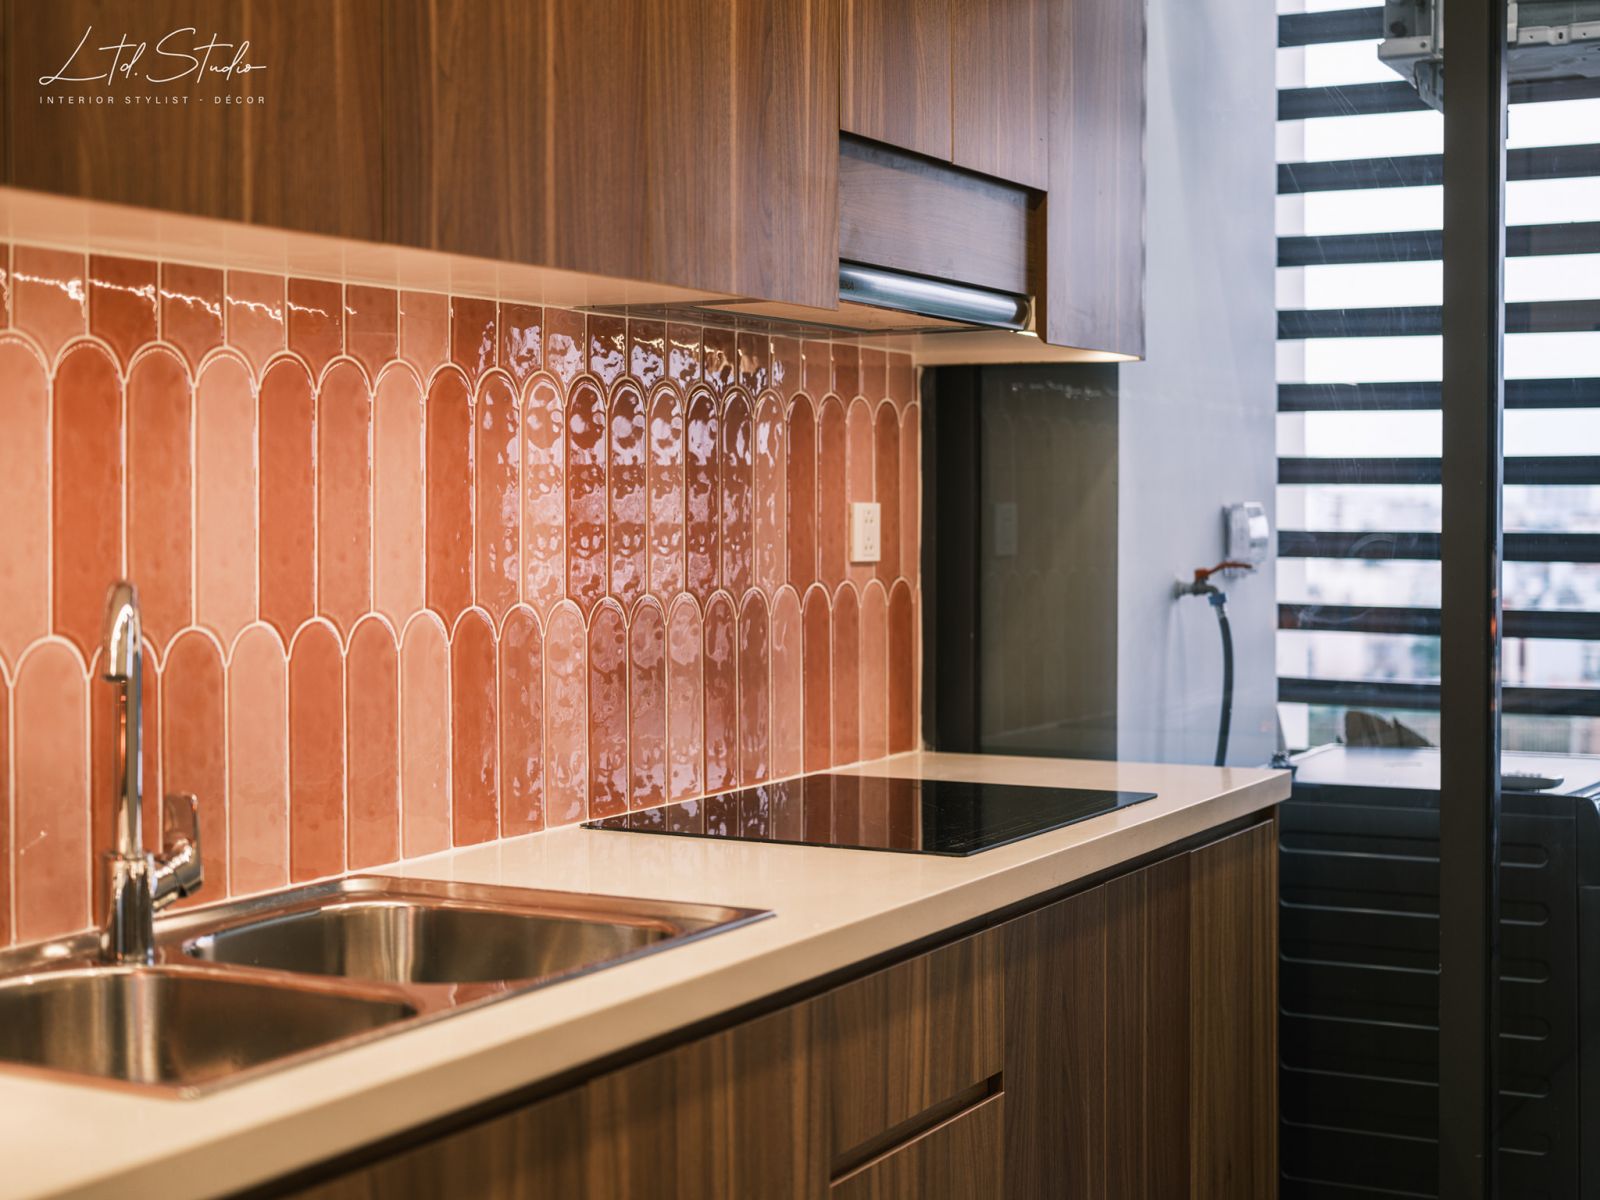 Gạch mosaic sử dụng để lát tường gian bếp cũng được lựa chọn theo tiêu chí “bo tròn”, màu hồng - đỏ đan xen, thể hiện đúng gam màu chung của căn hộ.